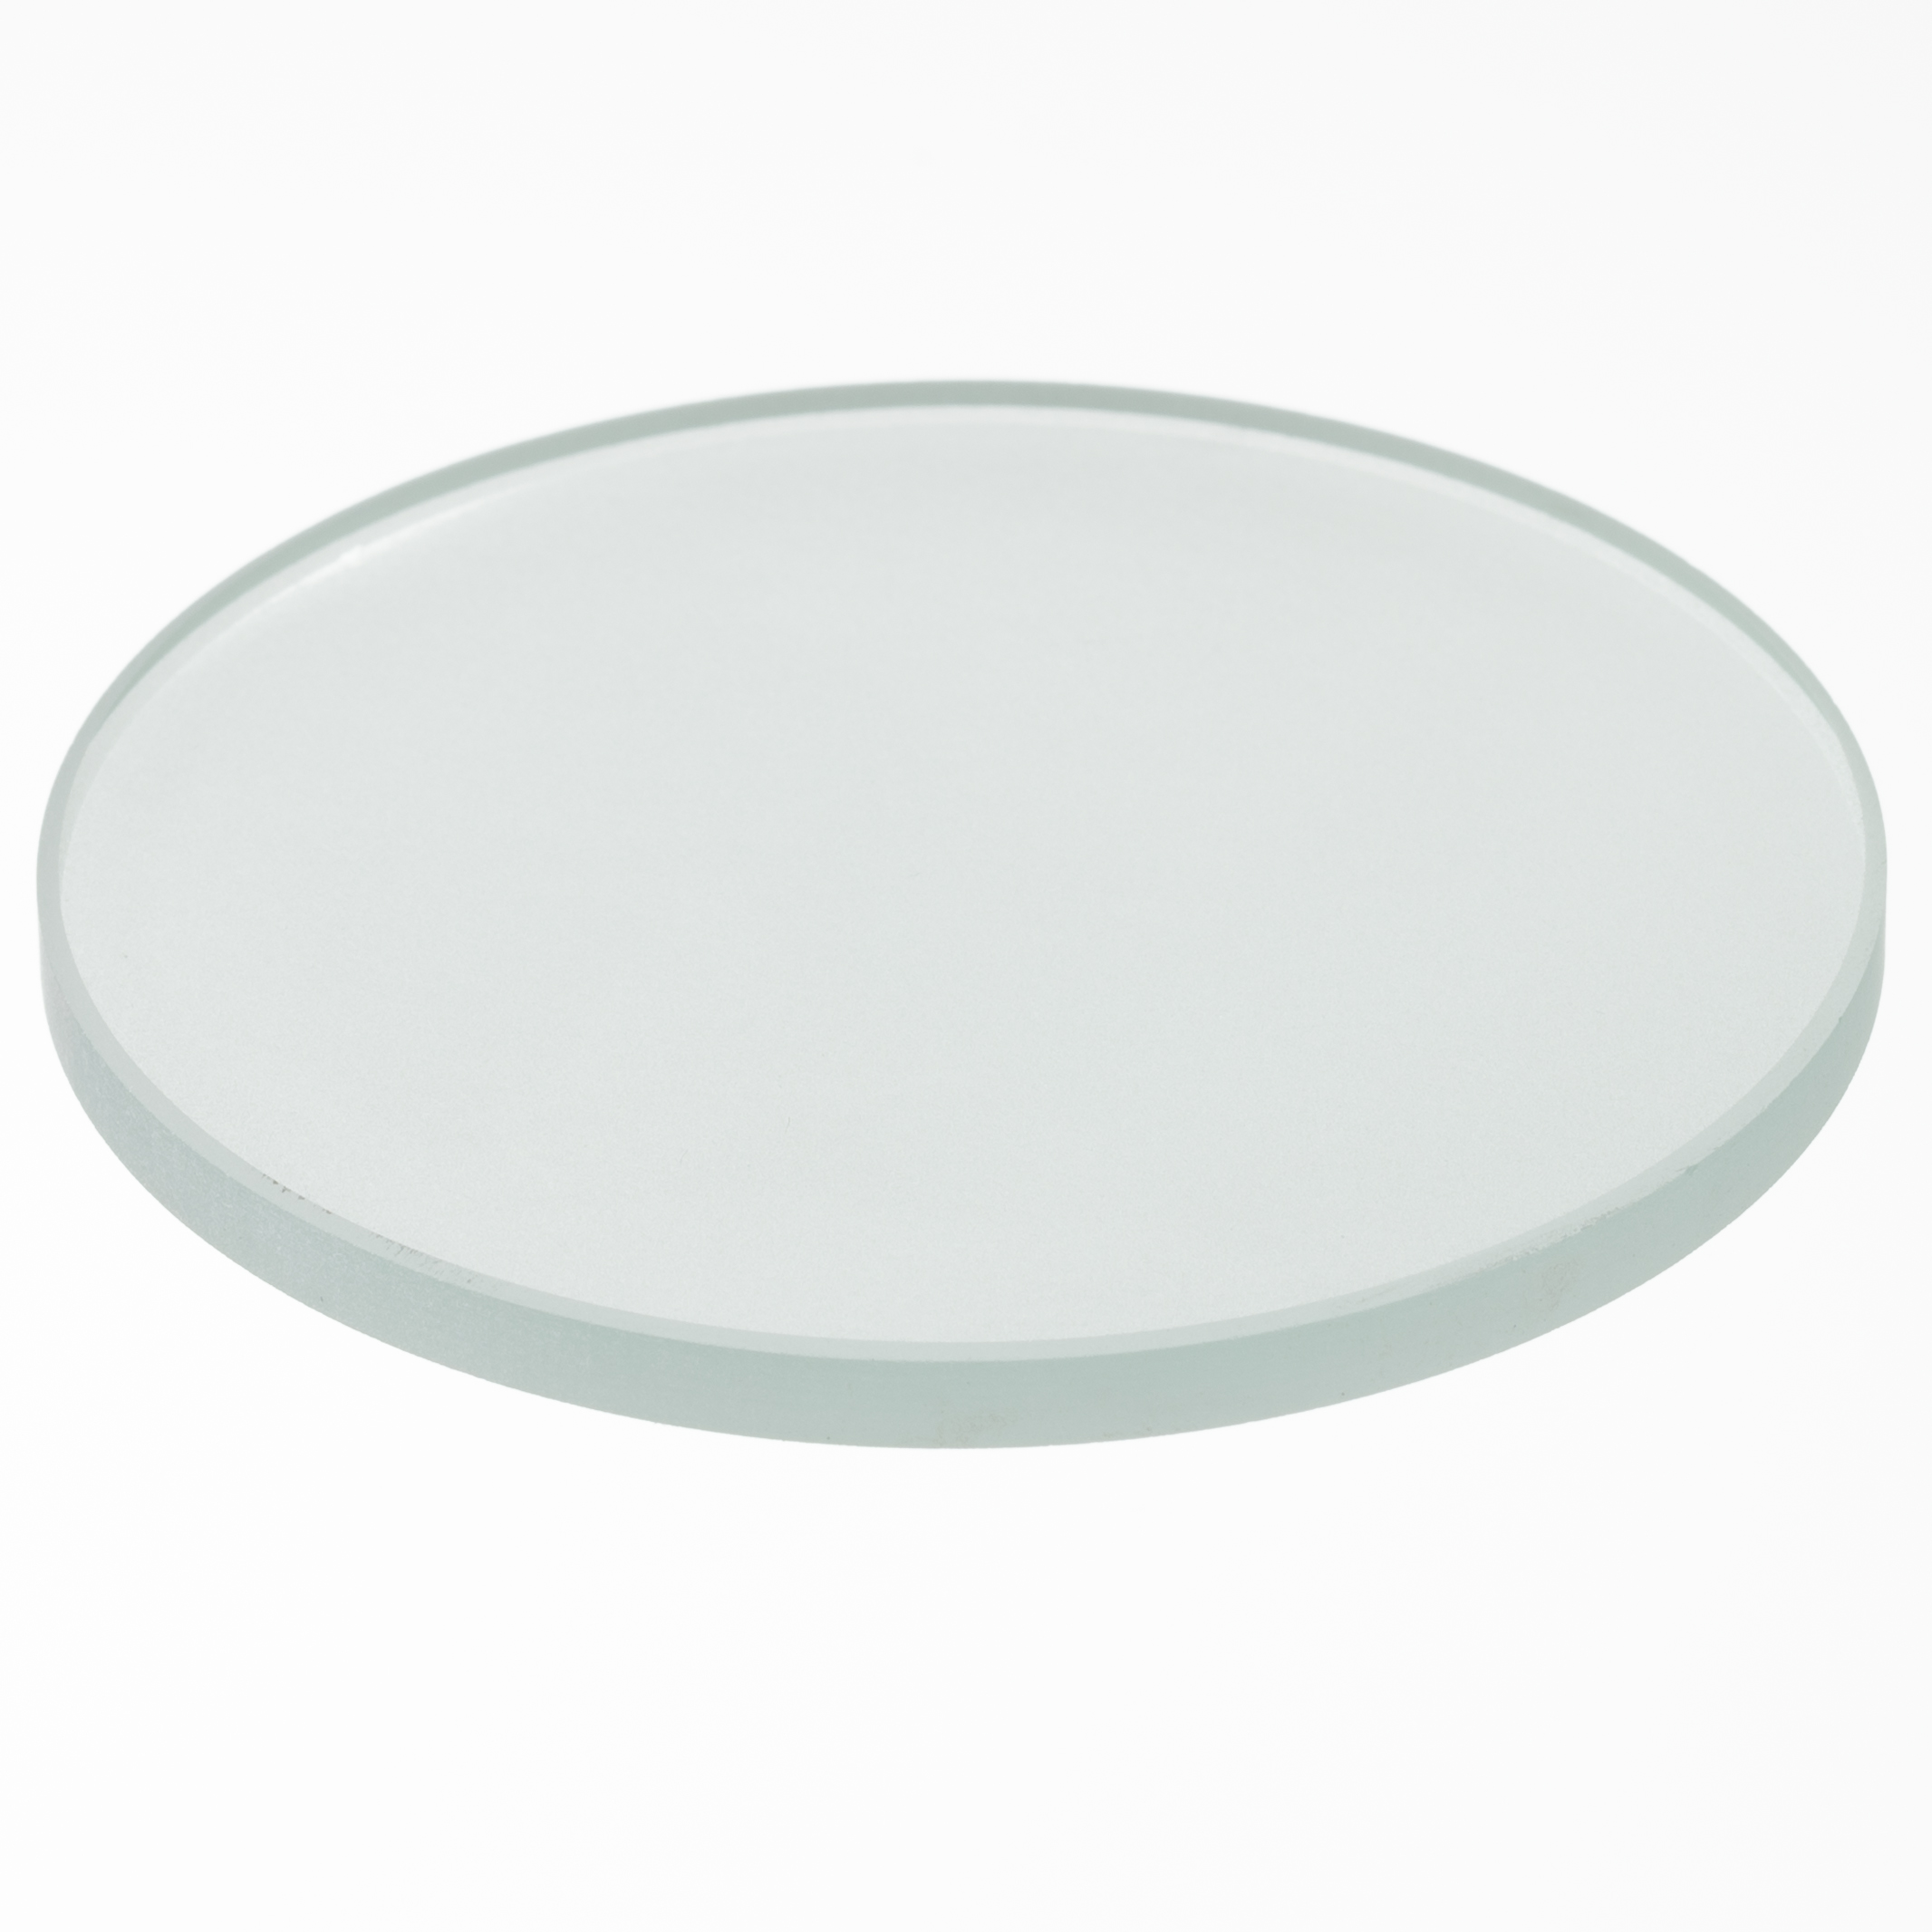 BRESSER Object plate glass (50 mm)